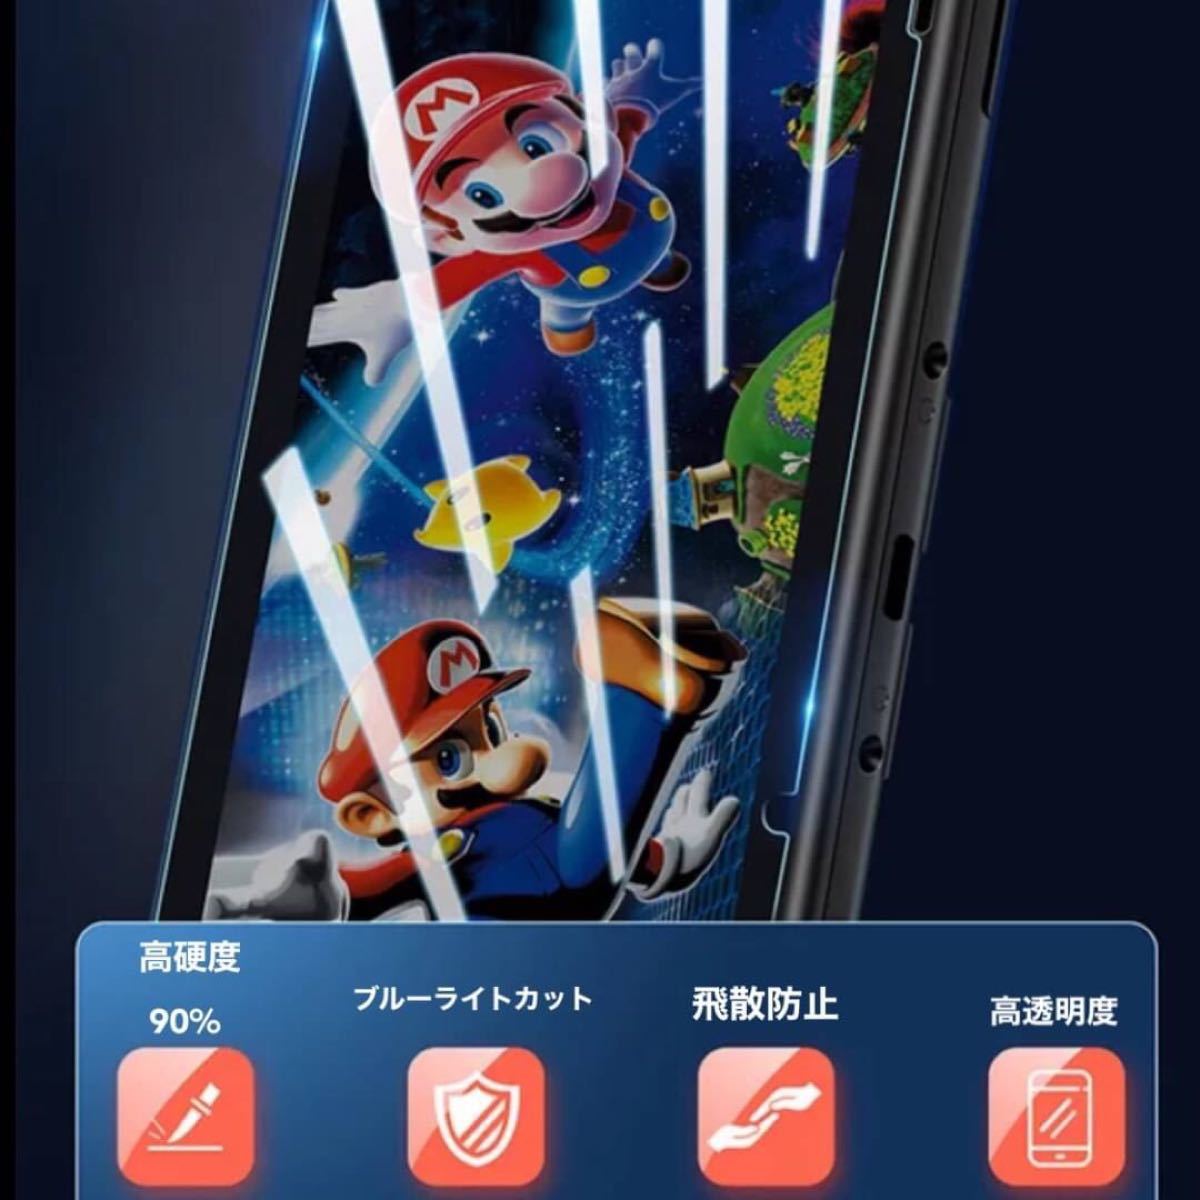 任天堂スイッチ Nintendo Switch 保護フィルム ガラスフィルム ブルーライトカット 液晶 新品未使用 送料無料